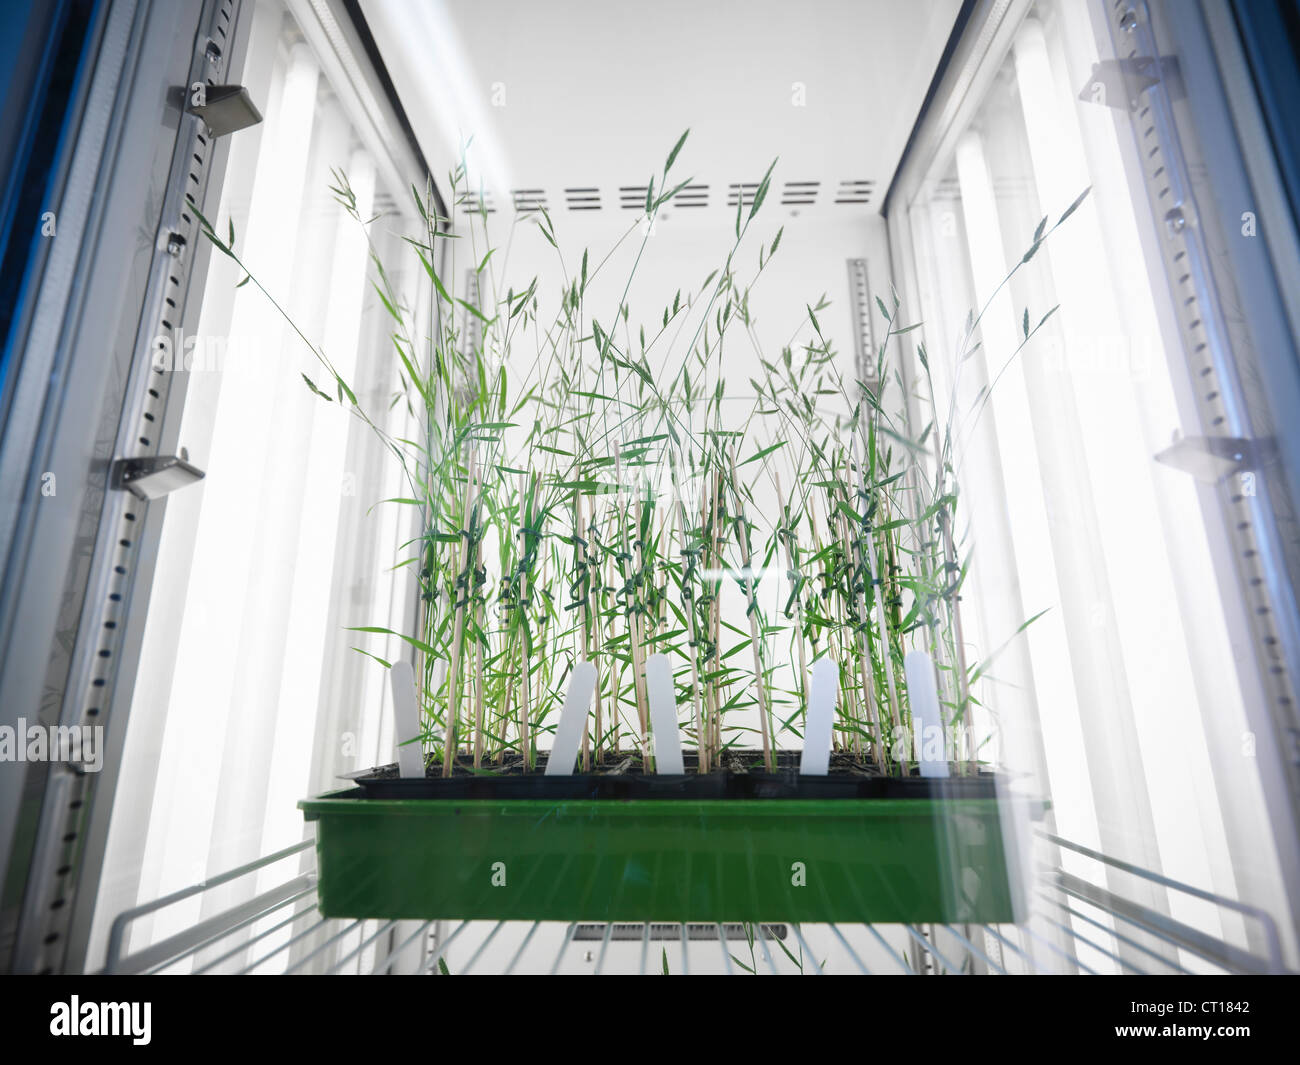 Pflanzen wachsen im Labor Kühlschrank Stockfotografie - Alamy